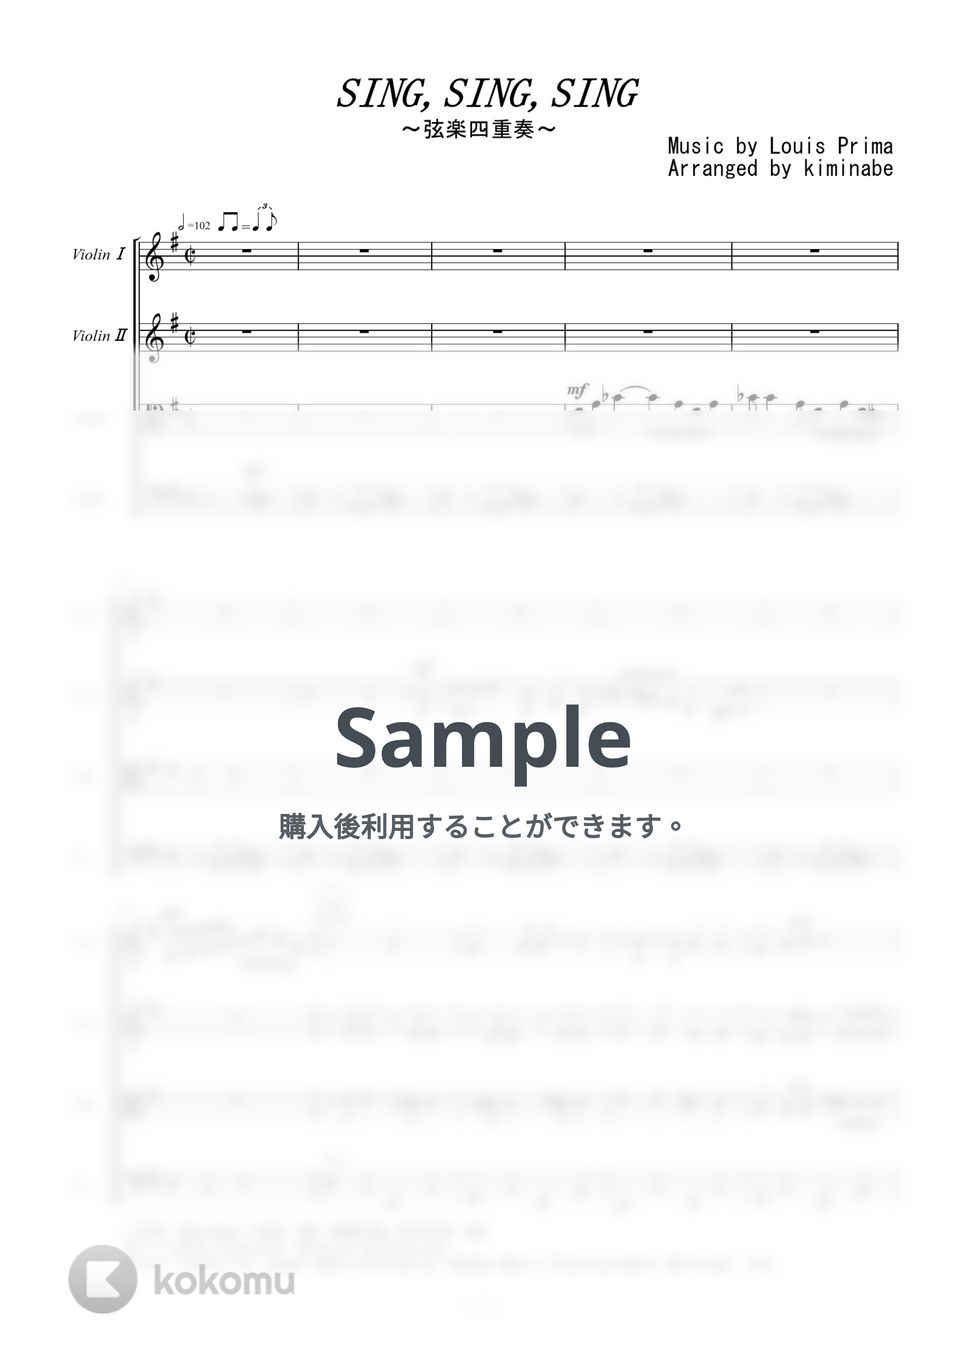 ベニーグッドマン - Sing,Sing,Sing (弦楽四重奏) by kiminabe